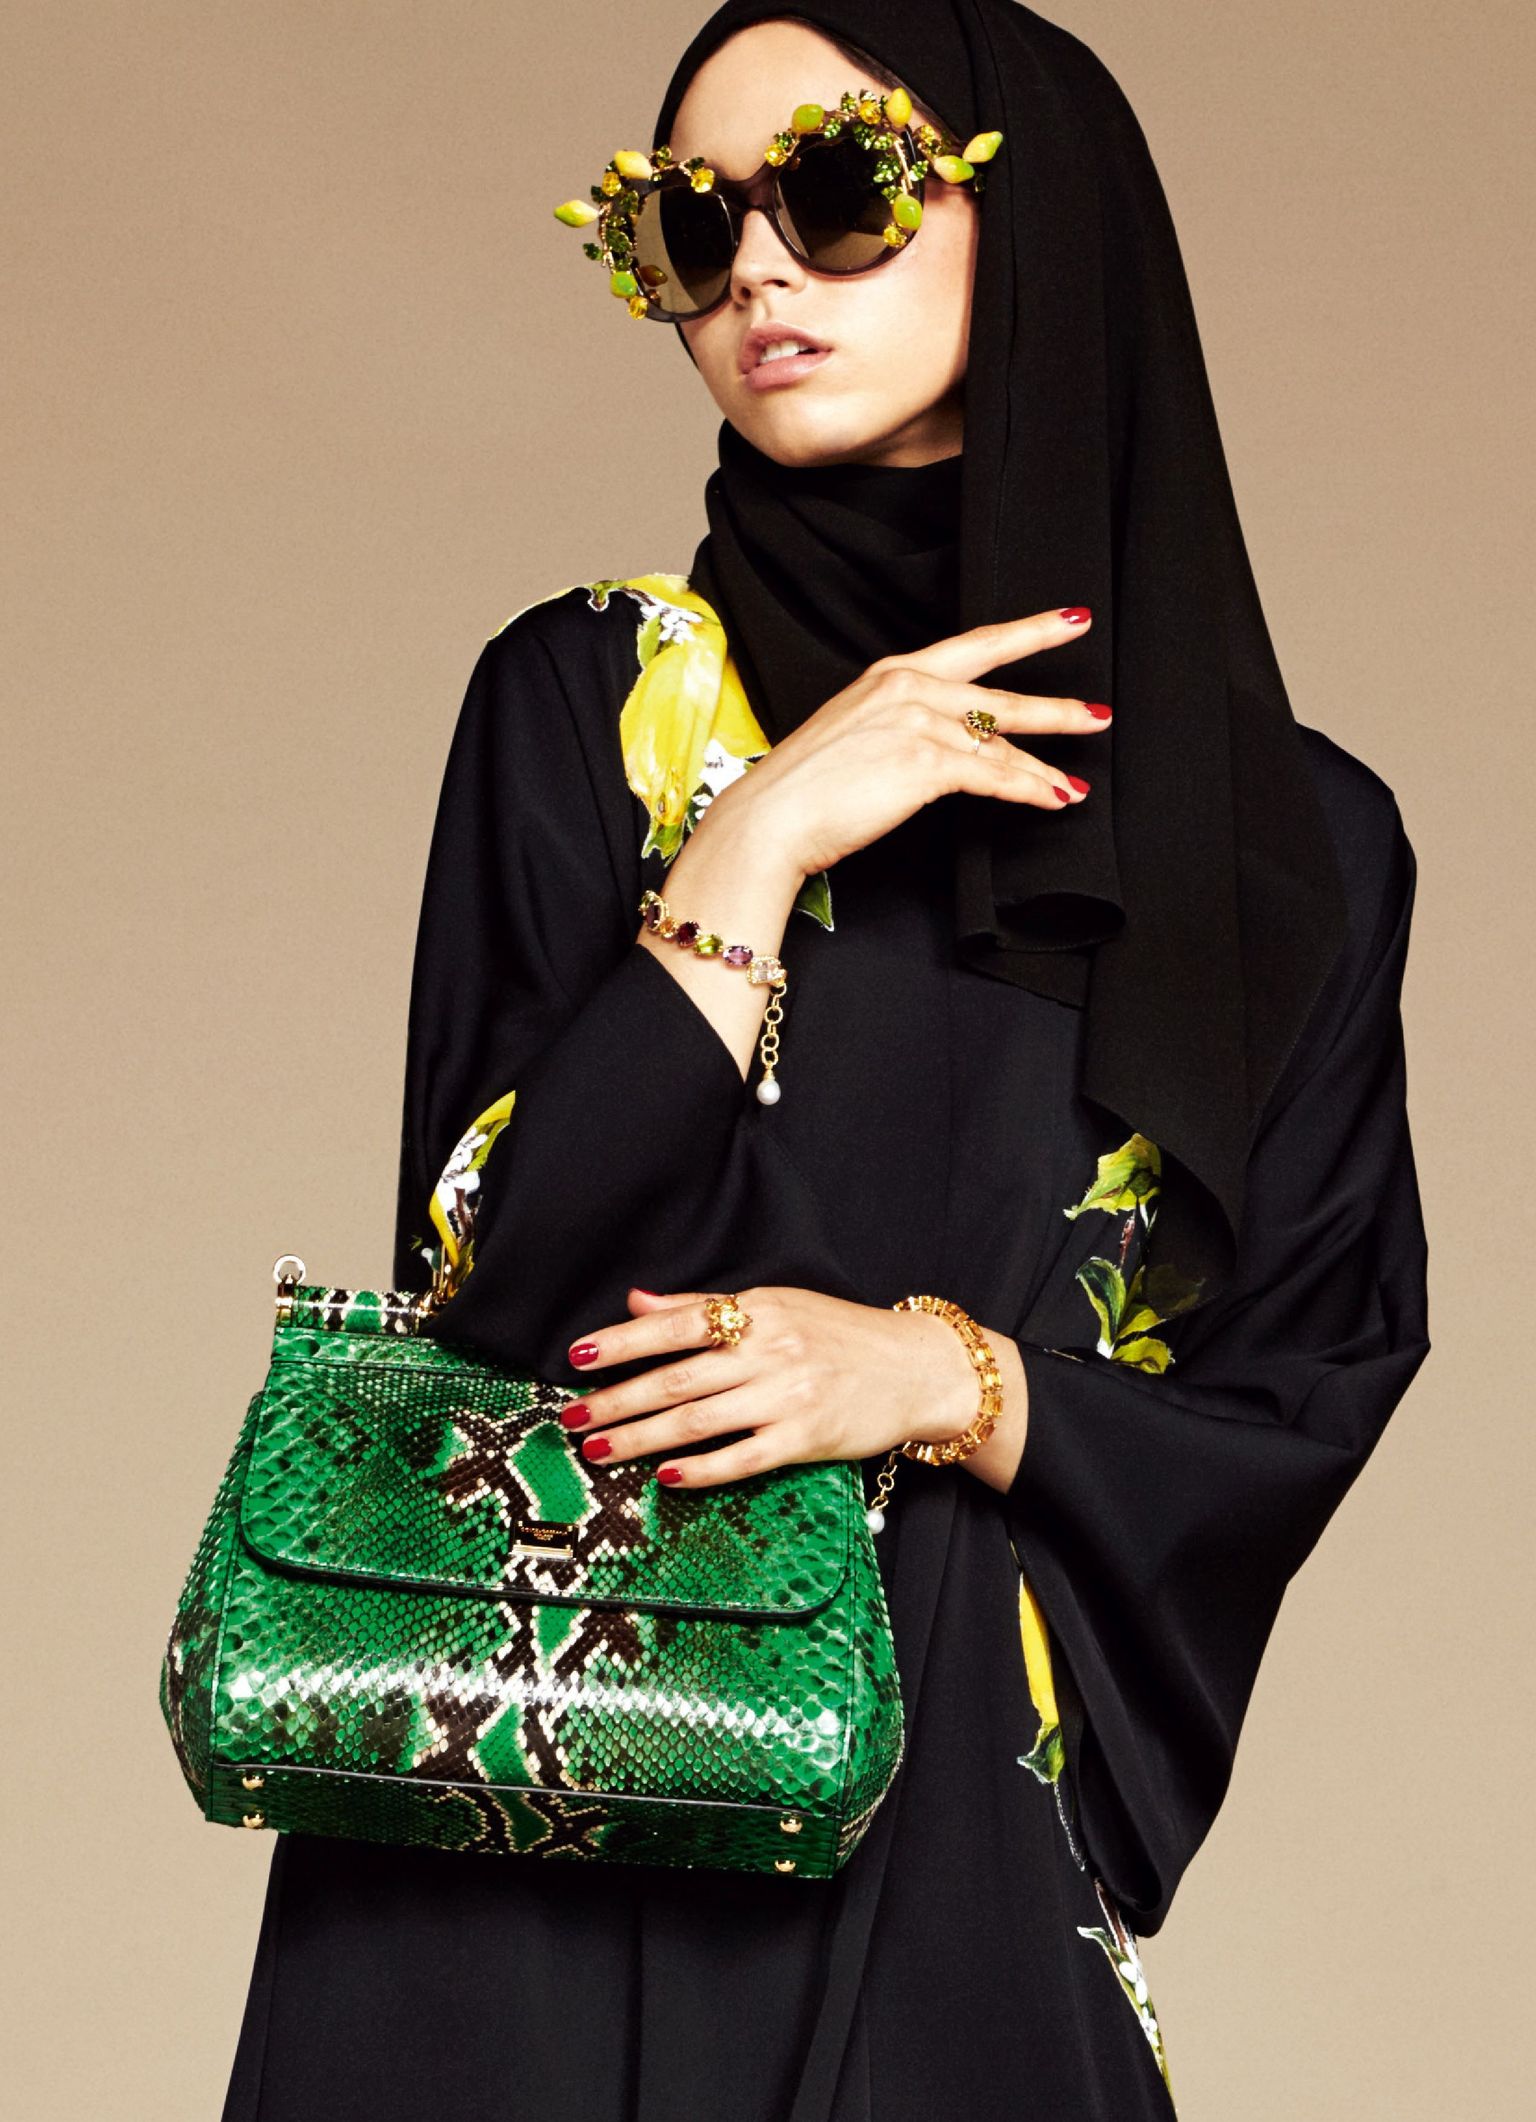 Inimesed, kes jõuaksid osta Dolce & Gabbana Londoni poest spetsiaalselt moslemitele mõeldud riideid, ilmselt väga seekordsete küsitletute sekka ei sattunud.